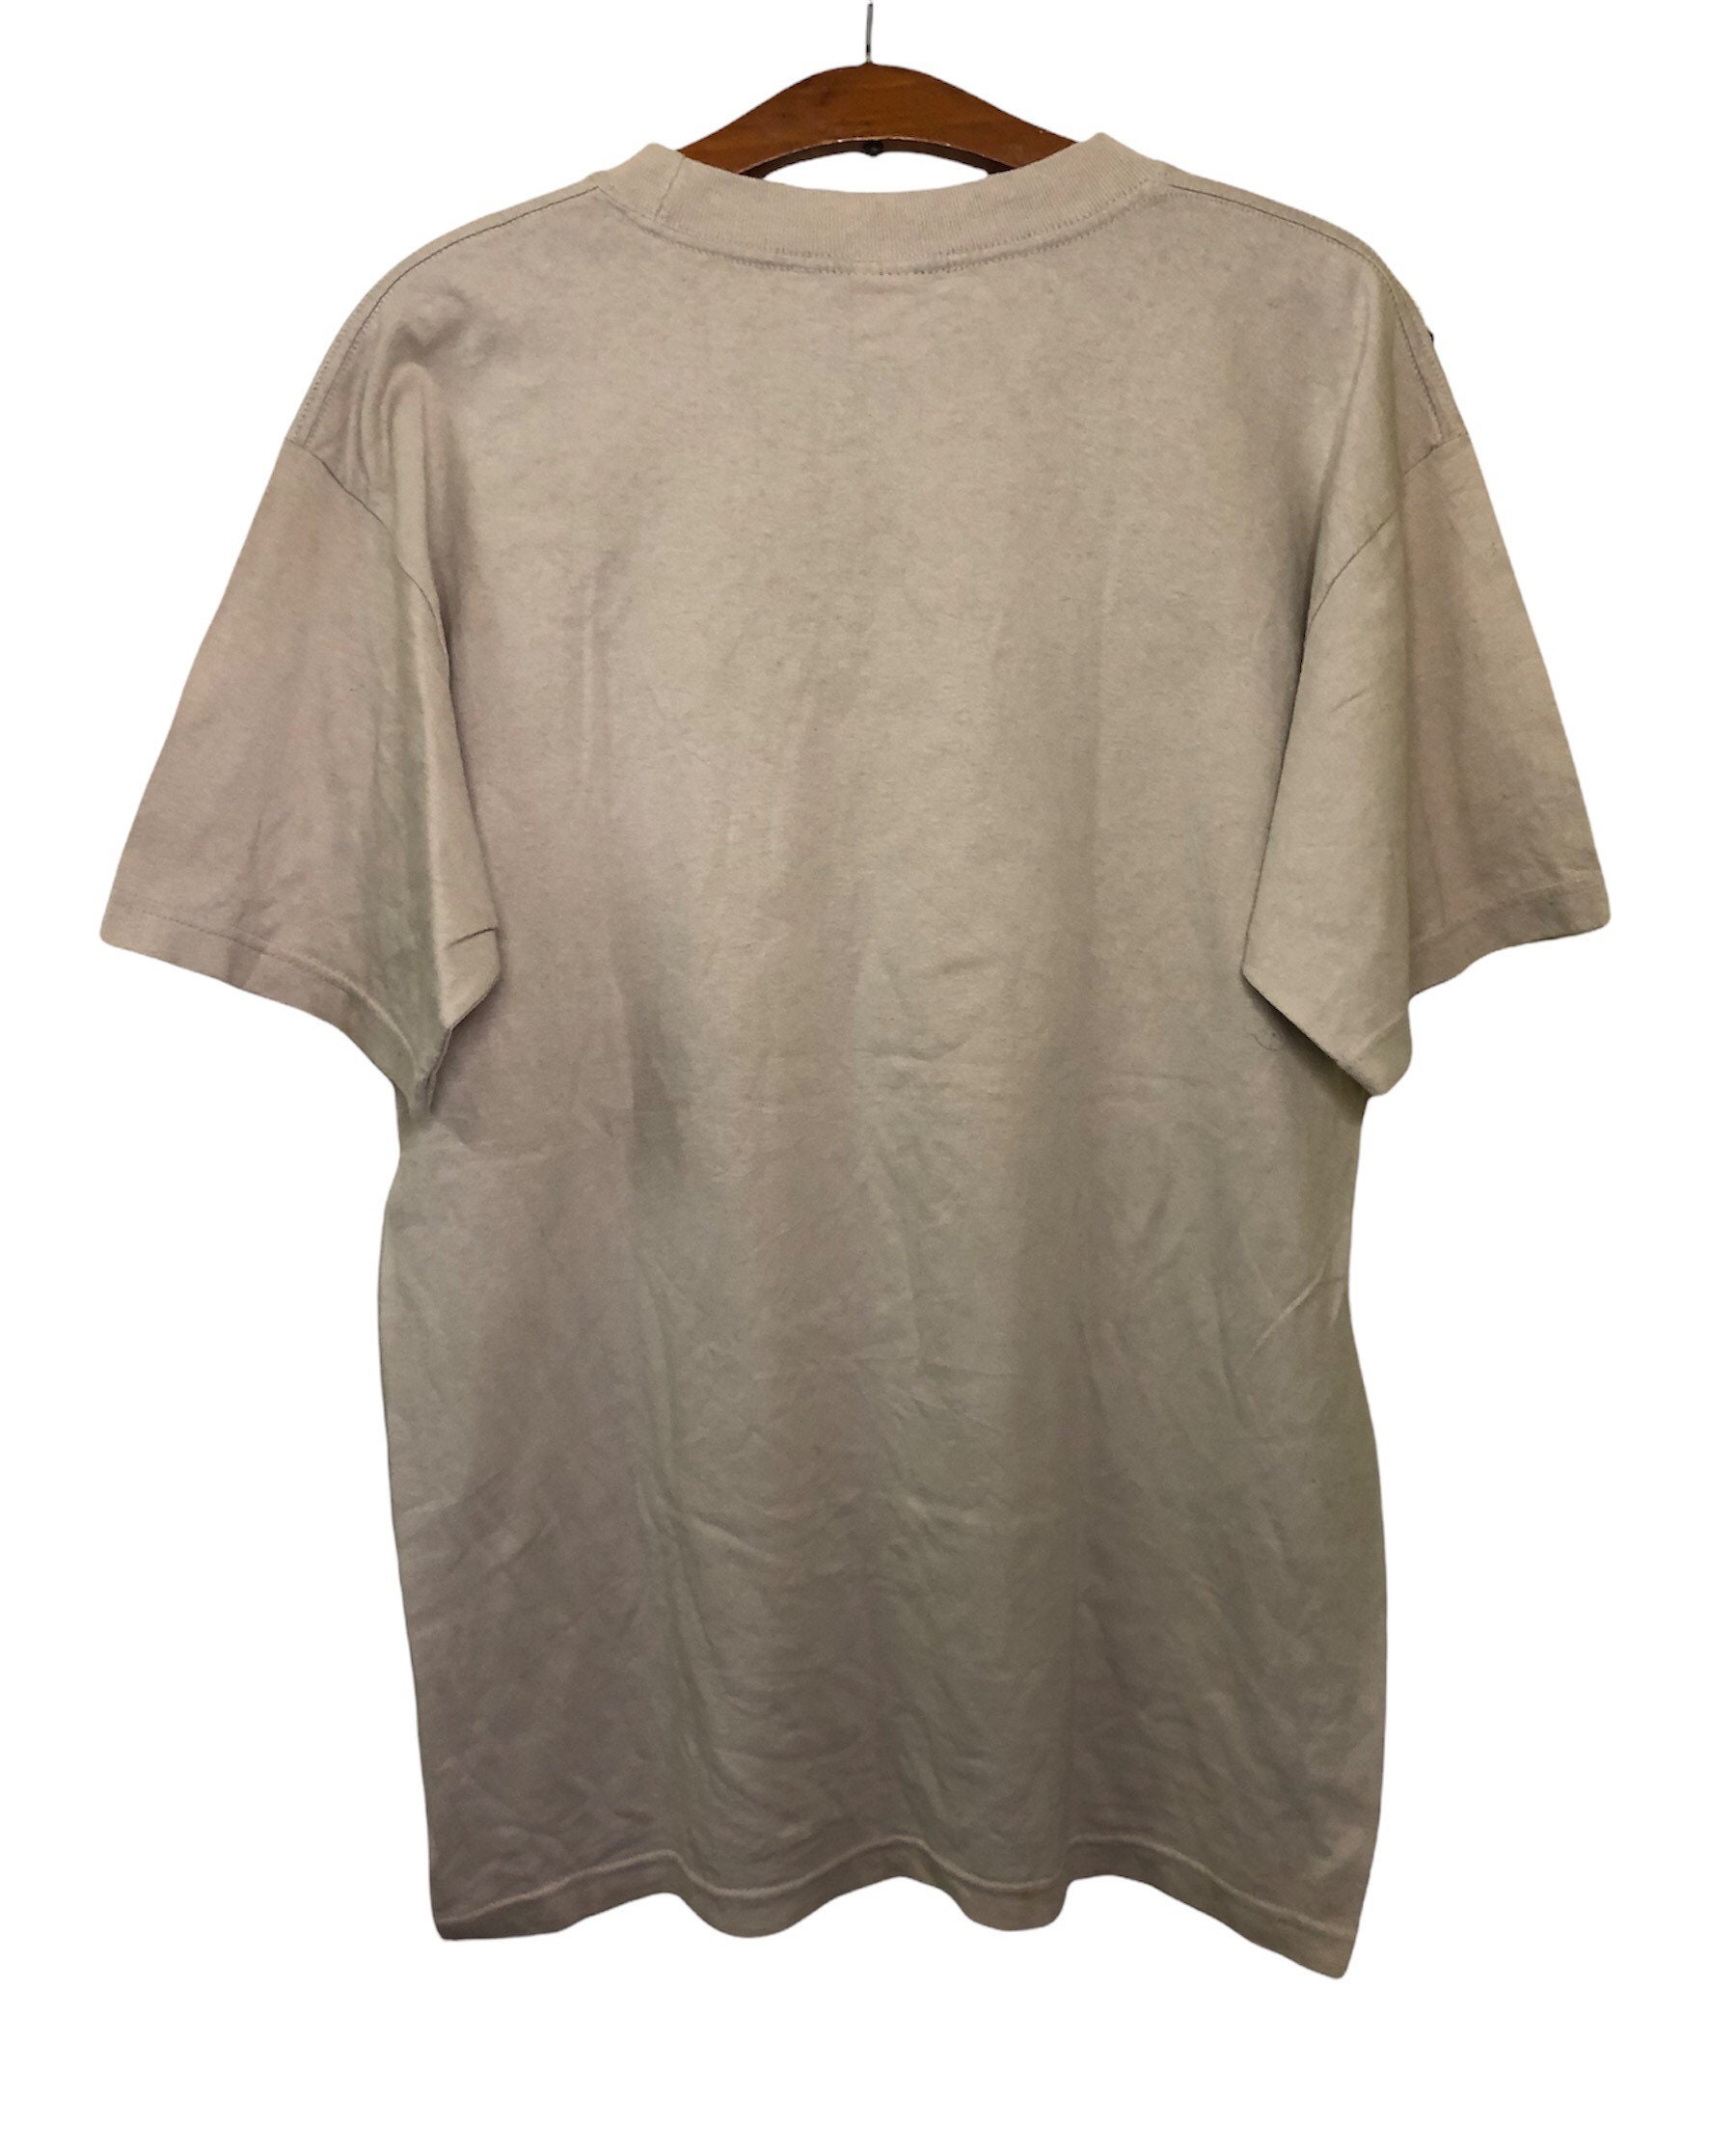 Vintage Xlarge Clothing Brand T Shirt Large Size - Etsy